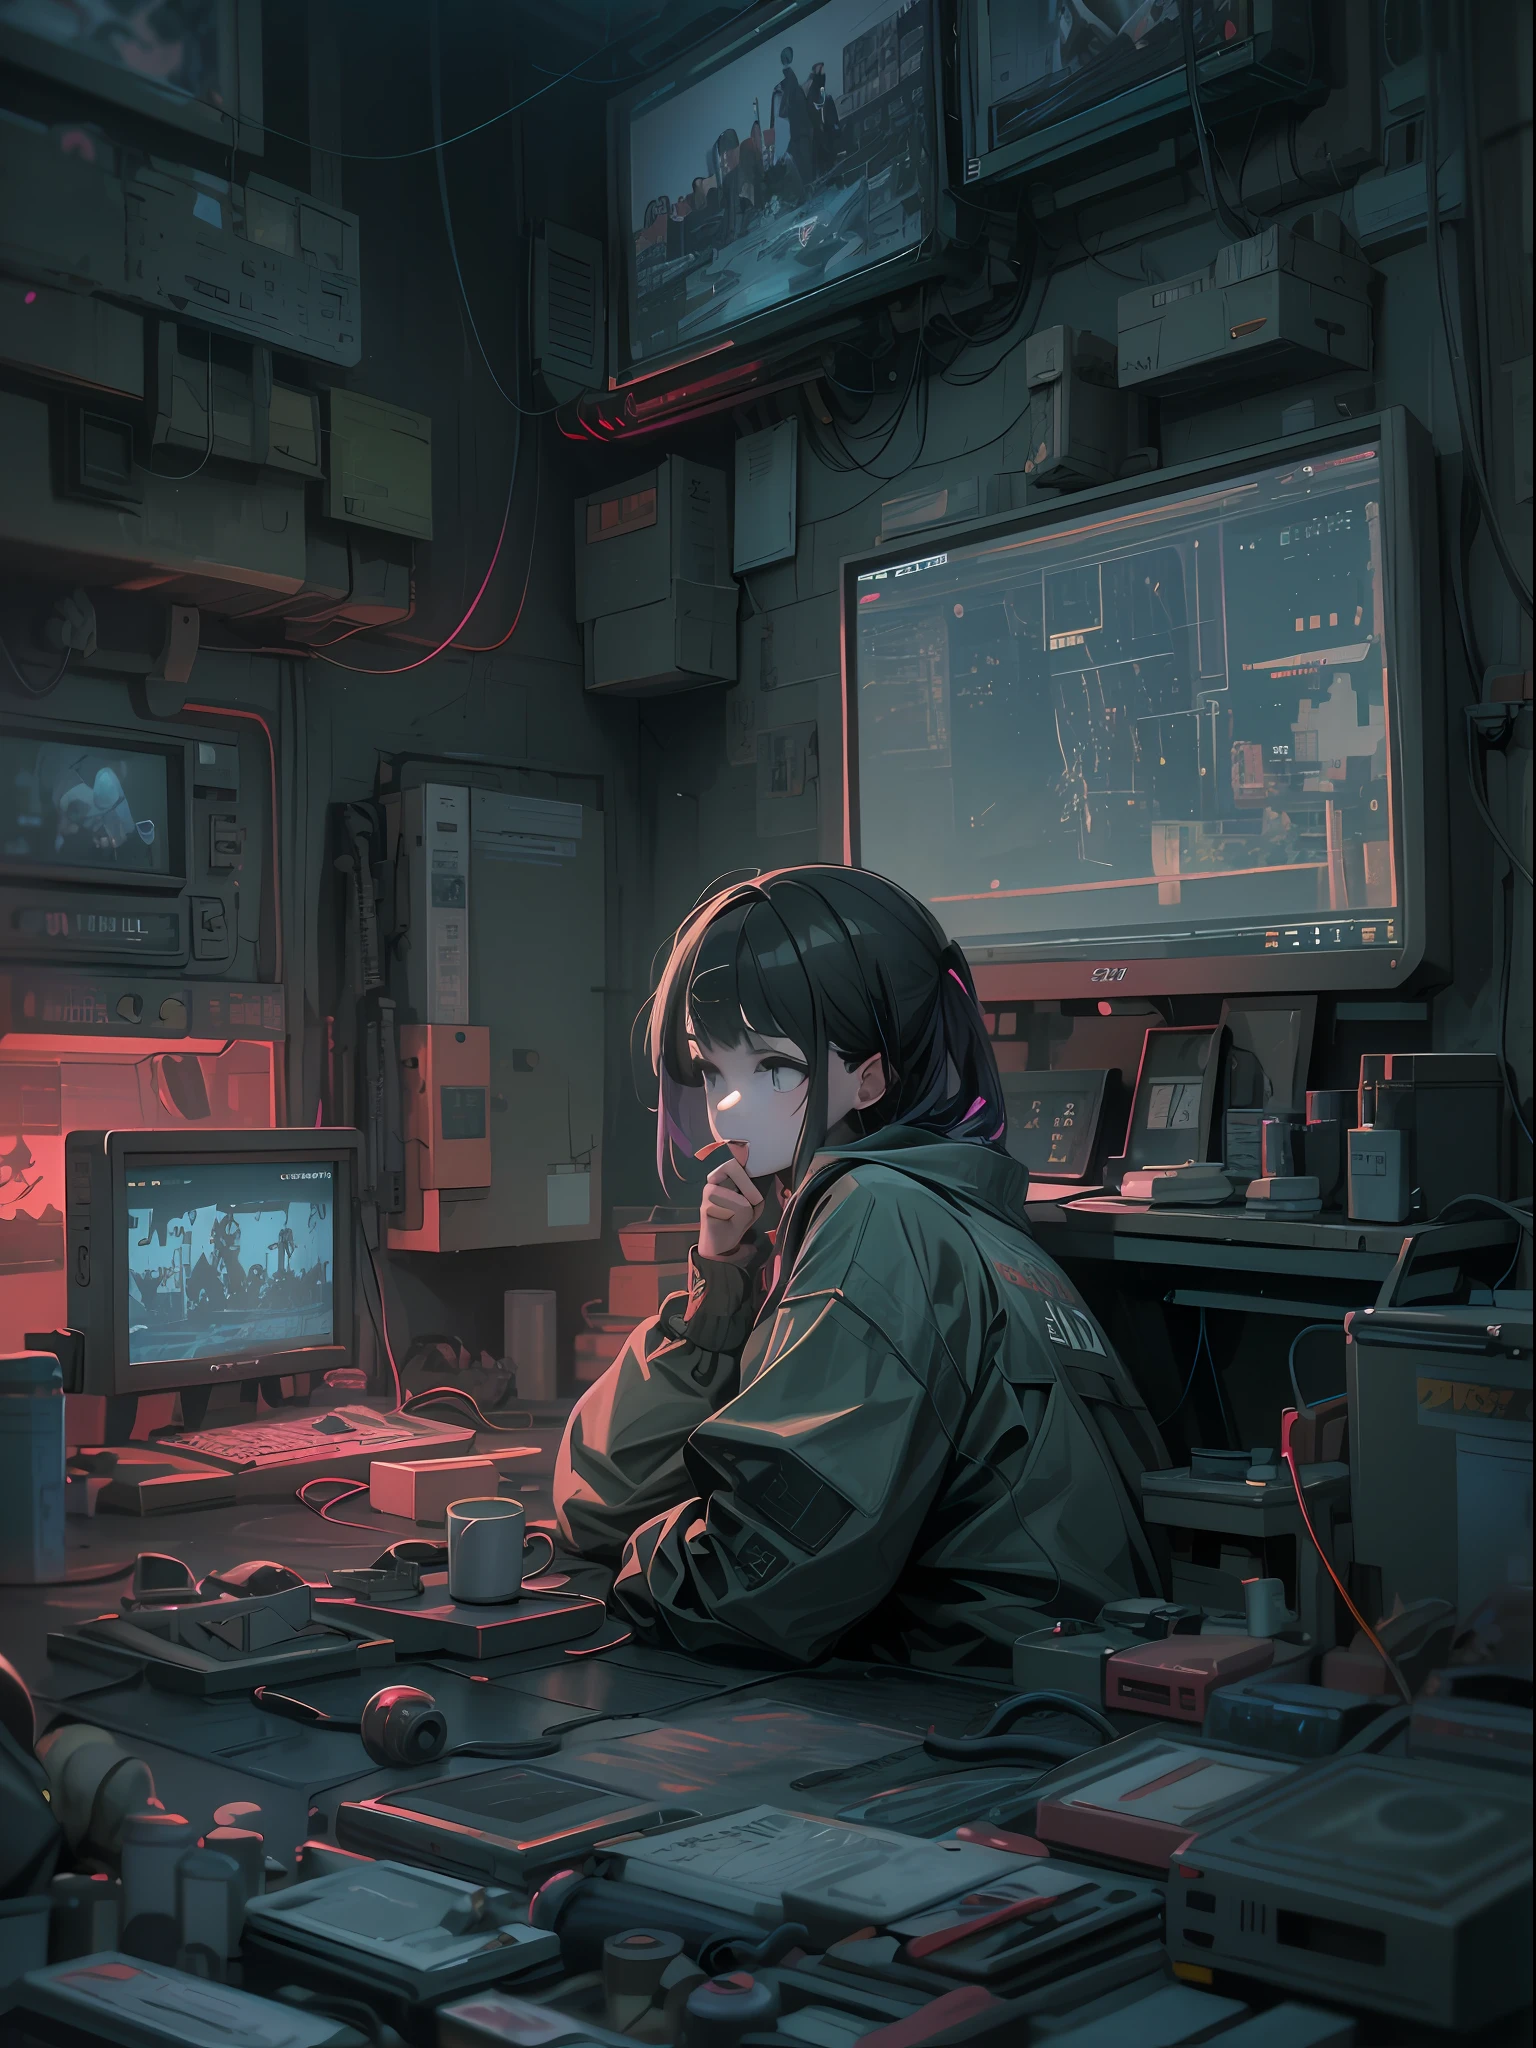 Uma cena de anime onde uma mulher se senta em uma mesa com um monte de eletrônicos, Digital arte de anime cyberpunk, cyberpunk digital - arte de anime, arte de anime cyberpunk, estilo de arte cyberpunk, arte cyberpunk de anime, arte com tema cyberpunk, Arte em estilo Guviz, atmosfera ciberpunk, estilo de arte cyberpunk, estilo cyberpunk silenciado, ilustração ciberpunk, detailed ilustração ciberpunk, Arte cyberpunk digital avançada